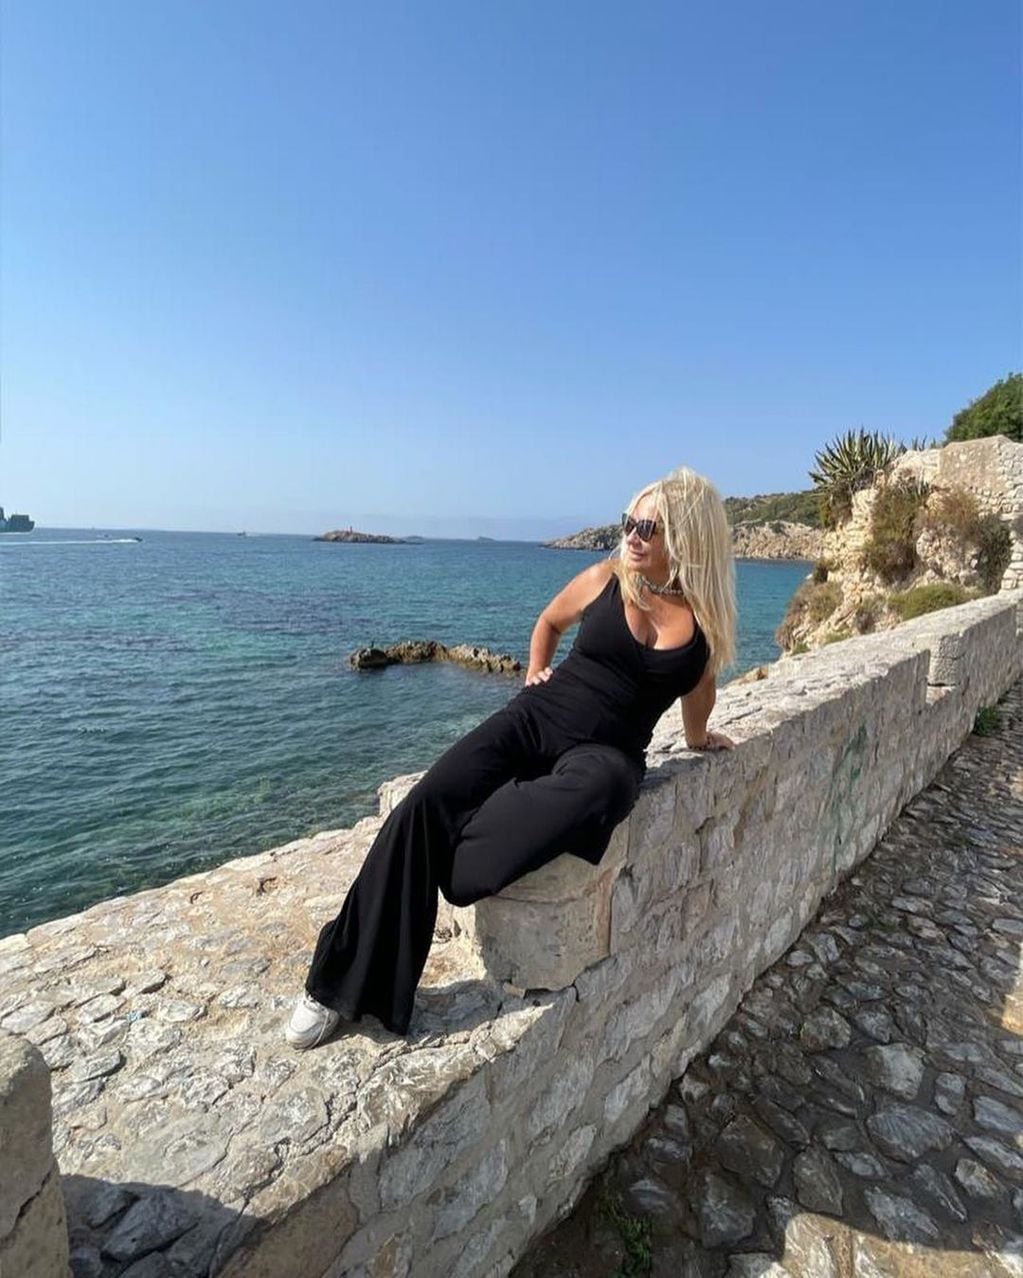 Nora Colosimo, la mamá de Wanda Nara, se mostró como toda una estrella disfrutando de sus lujosas vacaciones en Ibiza.